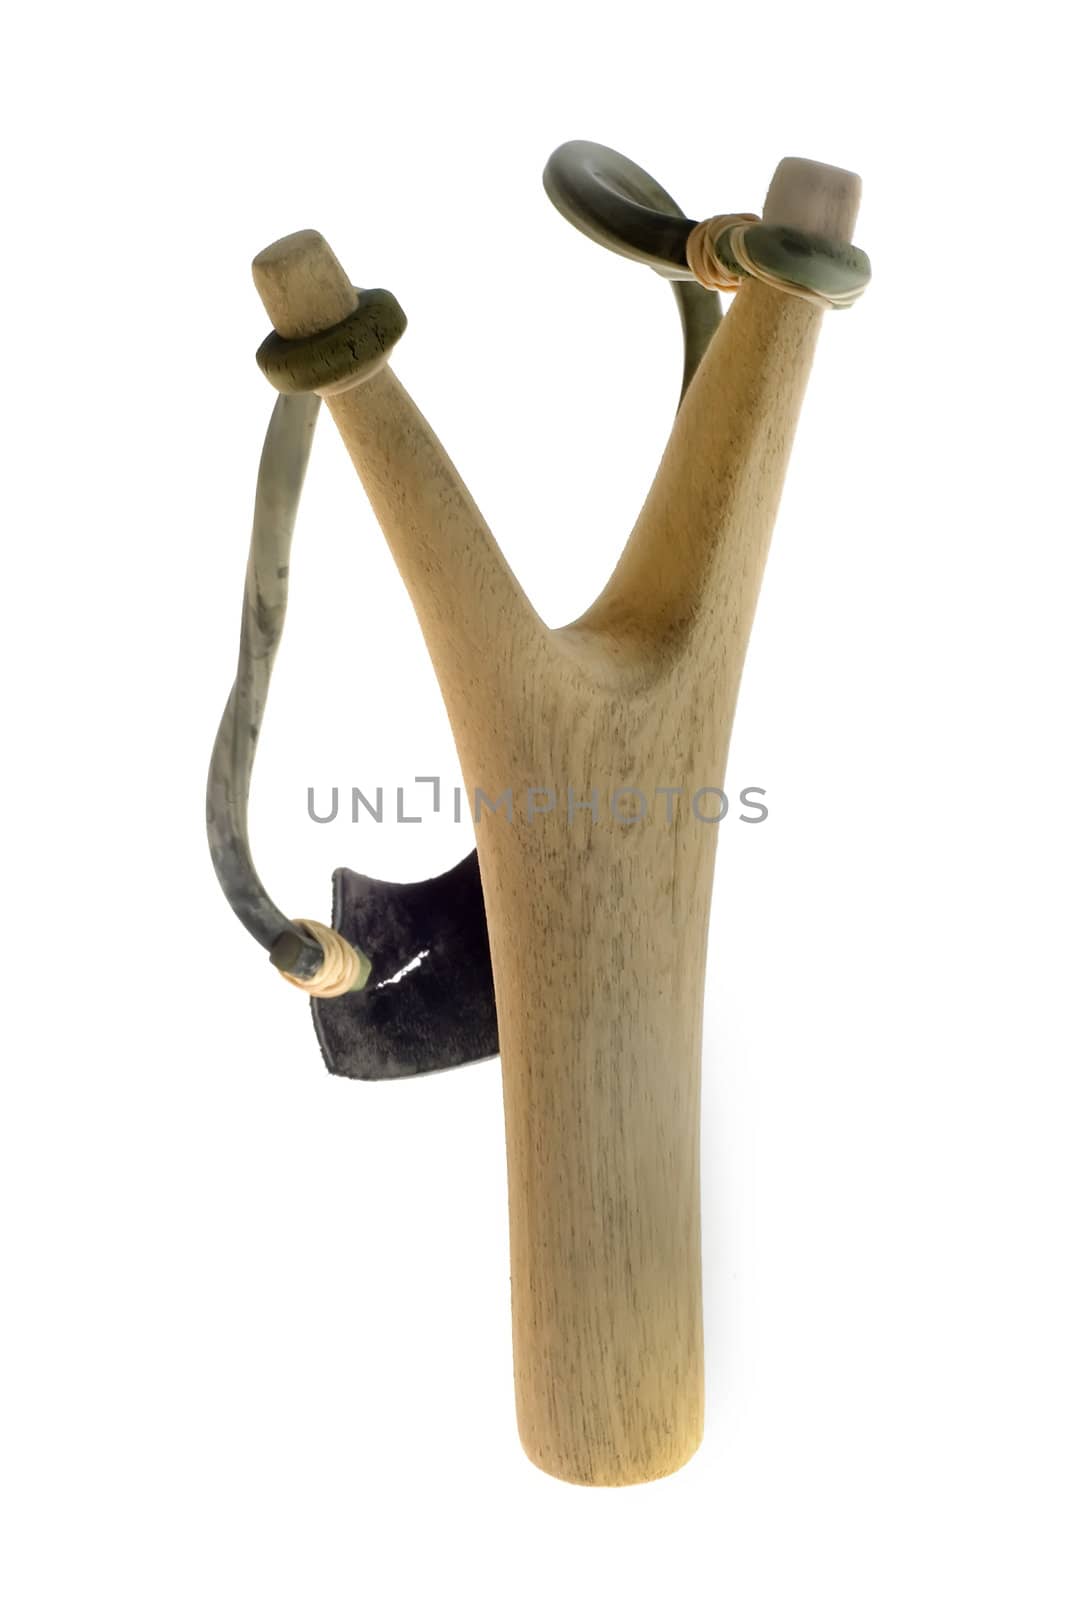 A wooden slingshot